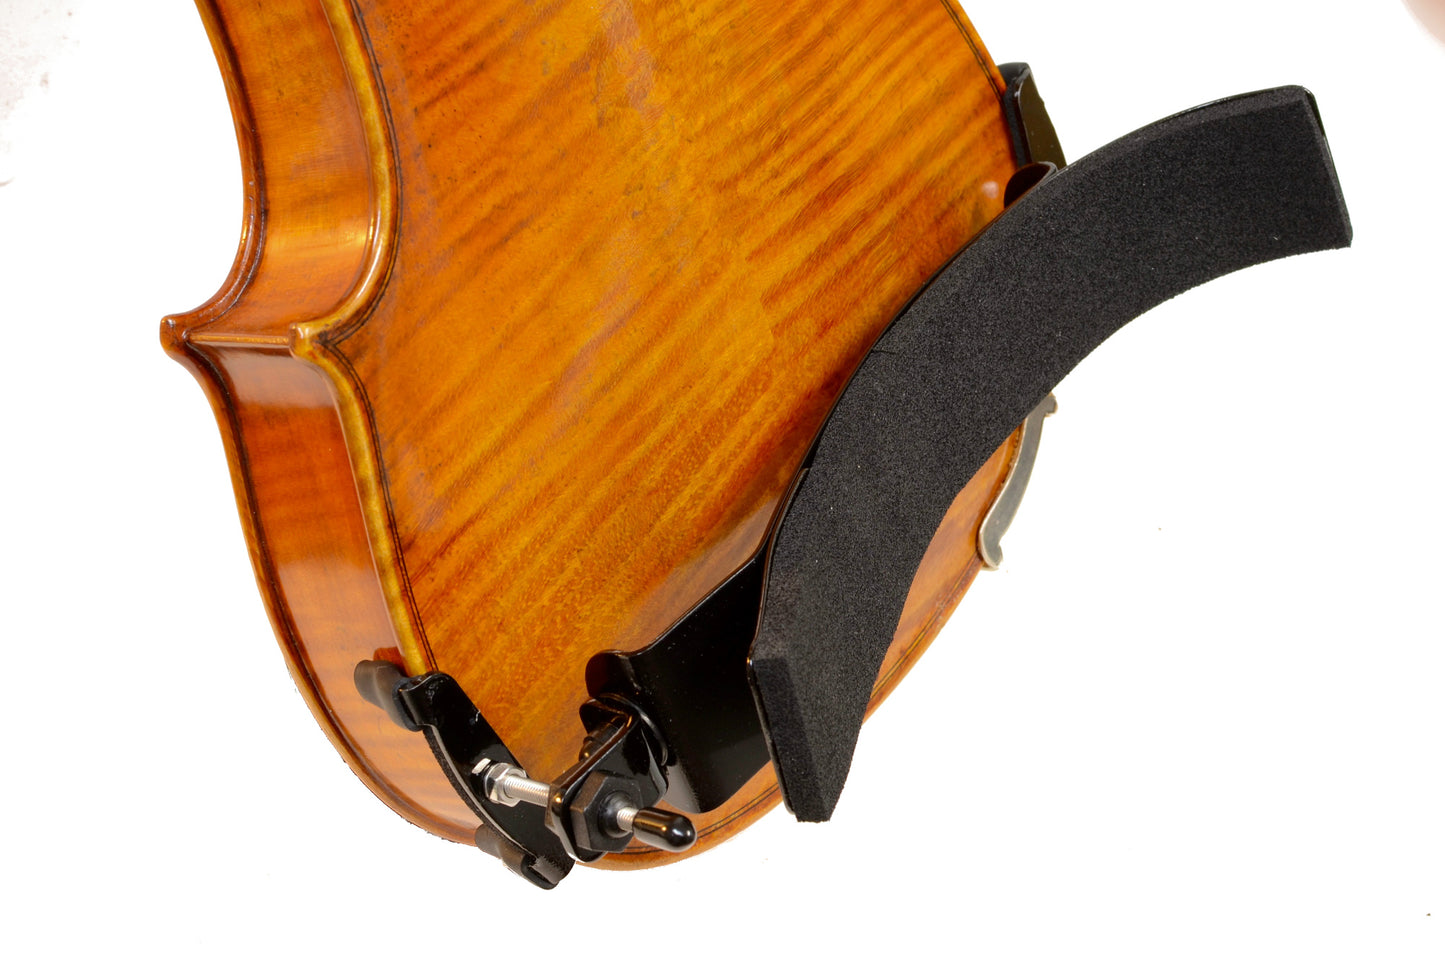 Bonmusica Violin Shoulder Rest